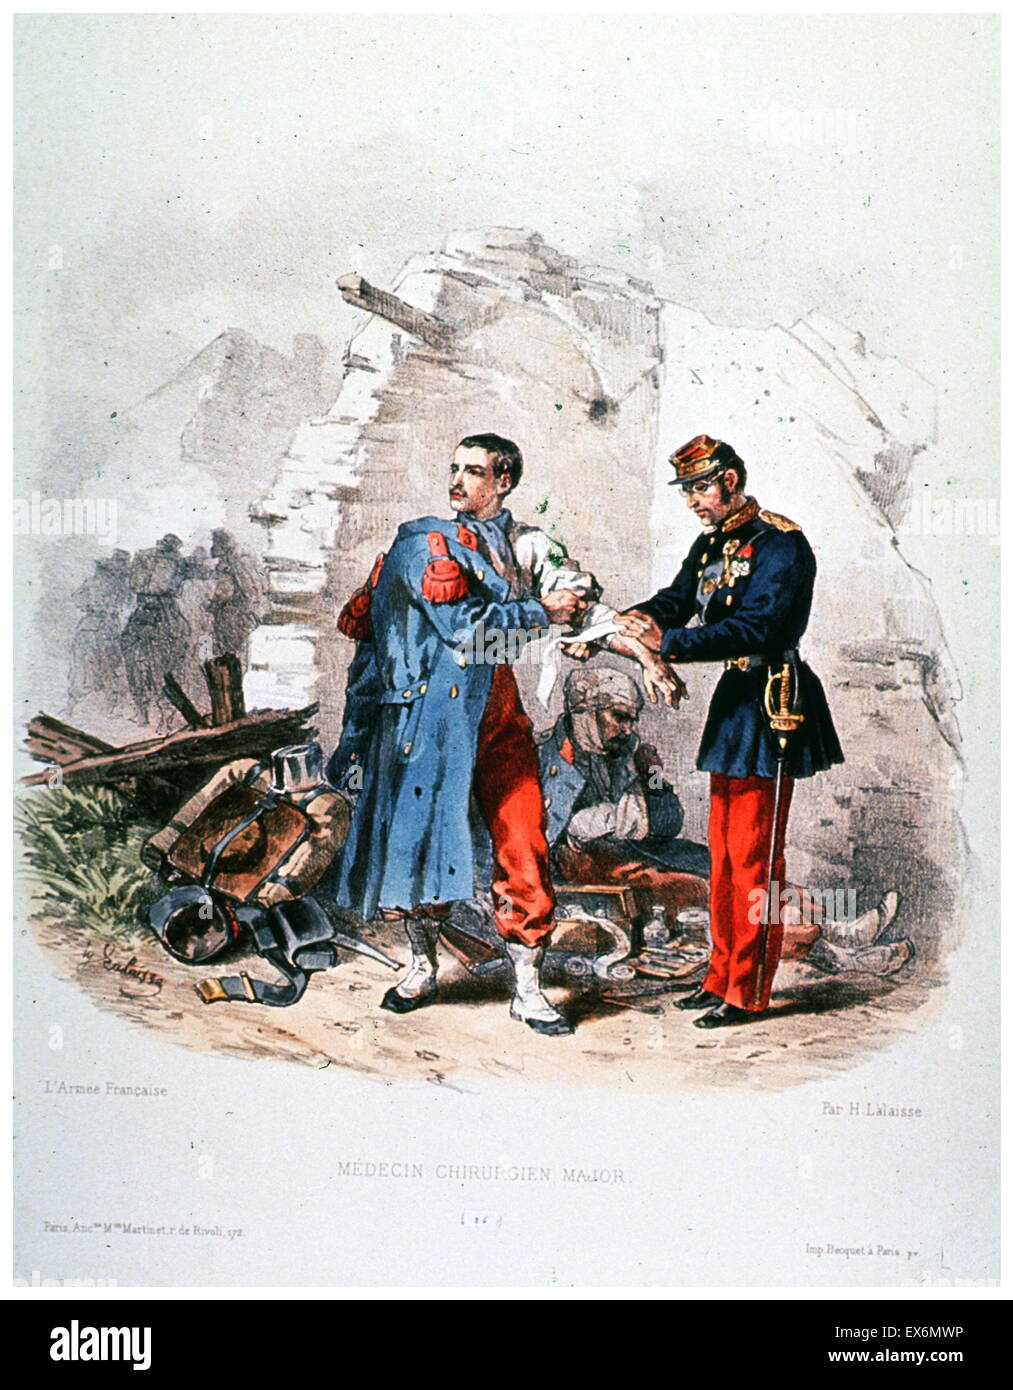 Druck, unter dem Titel "Médecin Chirurgien Major' (Arzt Chirurg Major), ist eine Hand farbige Lithographie von Hippolyte Lalaisse in den 1840er Jahren gemacht Stockfoto